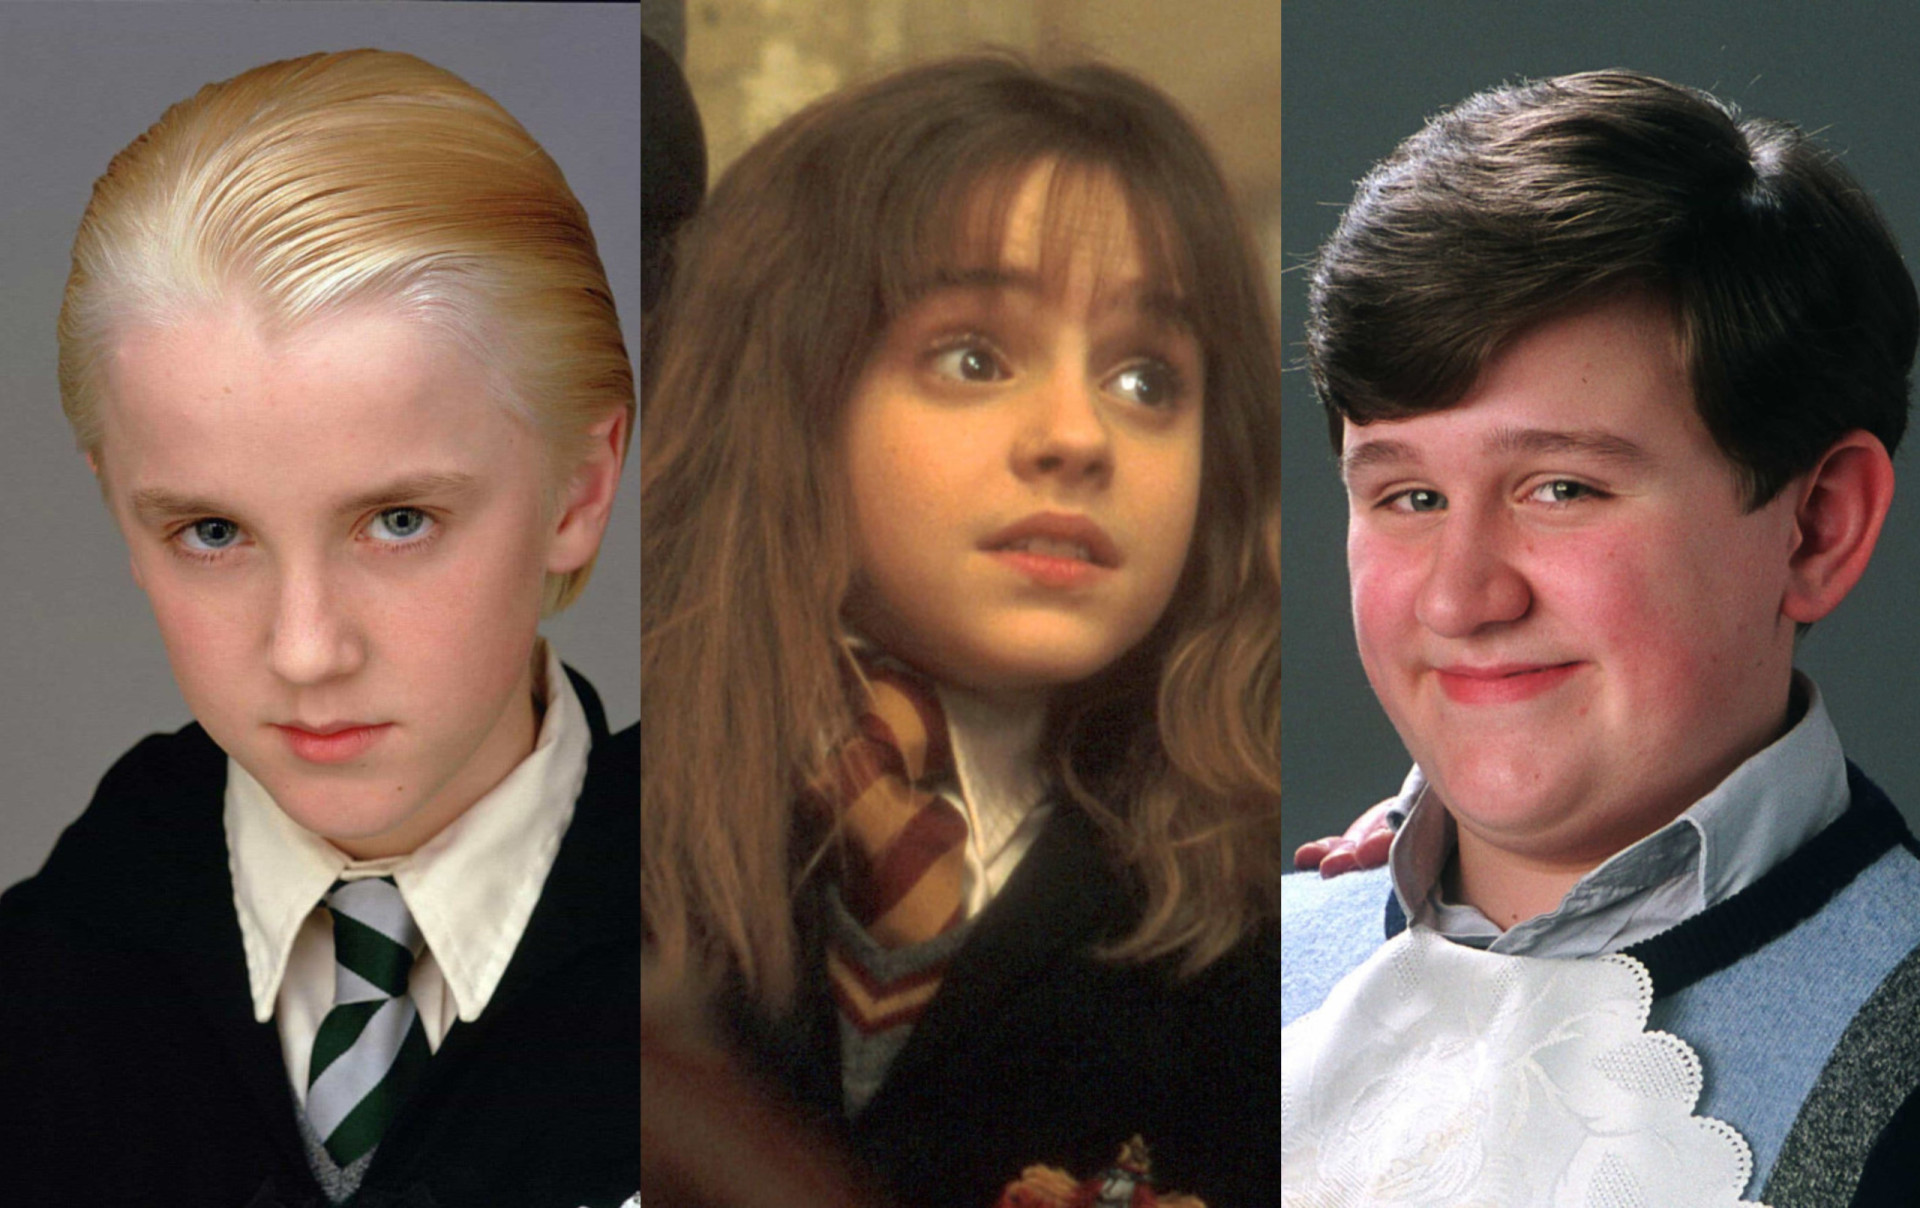 En 2001, se introdujo en el cine un joven mago llamado Harry Potter y sus amigos, Hermione Granger y Ron Weasley, además de un enorme elenco de otros personajes fascinantes. Nacido de la fértil imaginación de la autora J.K. Rowling, Harry Potter siguió apareciendo en otras siete películas de una de las franquicias cinematográficas más exitosas de la historia. En 2022, los principales miembros del reparto se reunieron para un especial de televisión, "Harry Potter 20th Anniversary: Return to Hogwarts". Muchos eran niños cuando interpretaron por primera vez sus papeles, pero ¿cómo evolucionaron sus carreras después de Potter y a qué acabaron dedicándose?<br><br>Haz clic para ver cómo han cambiado los niños de 'Harry Potter'.<p>También te puede interesar:<a href="https://www.starsinsider.com/n/133327?utm_source=msn.com&utm_medium=display&utm_campaign=referral_description&utm_content=521994es-es"> Curiosidades impresionantes sobre Coca-Cola</a></p>